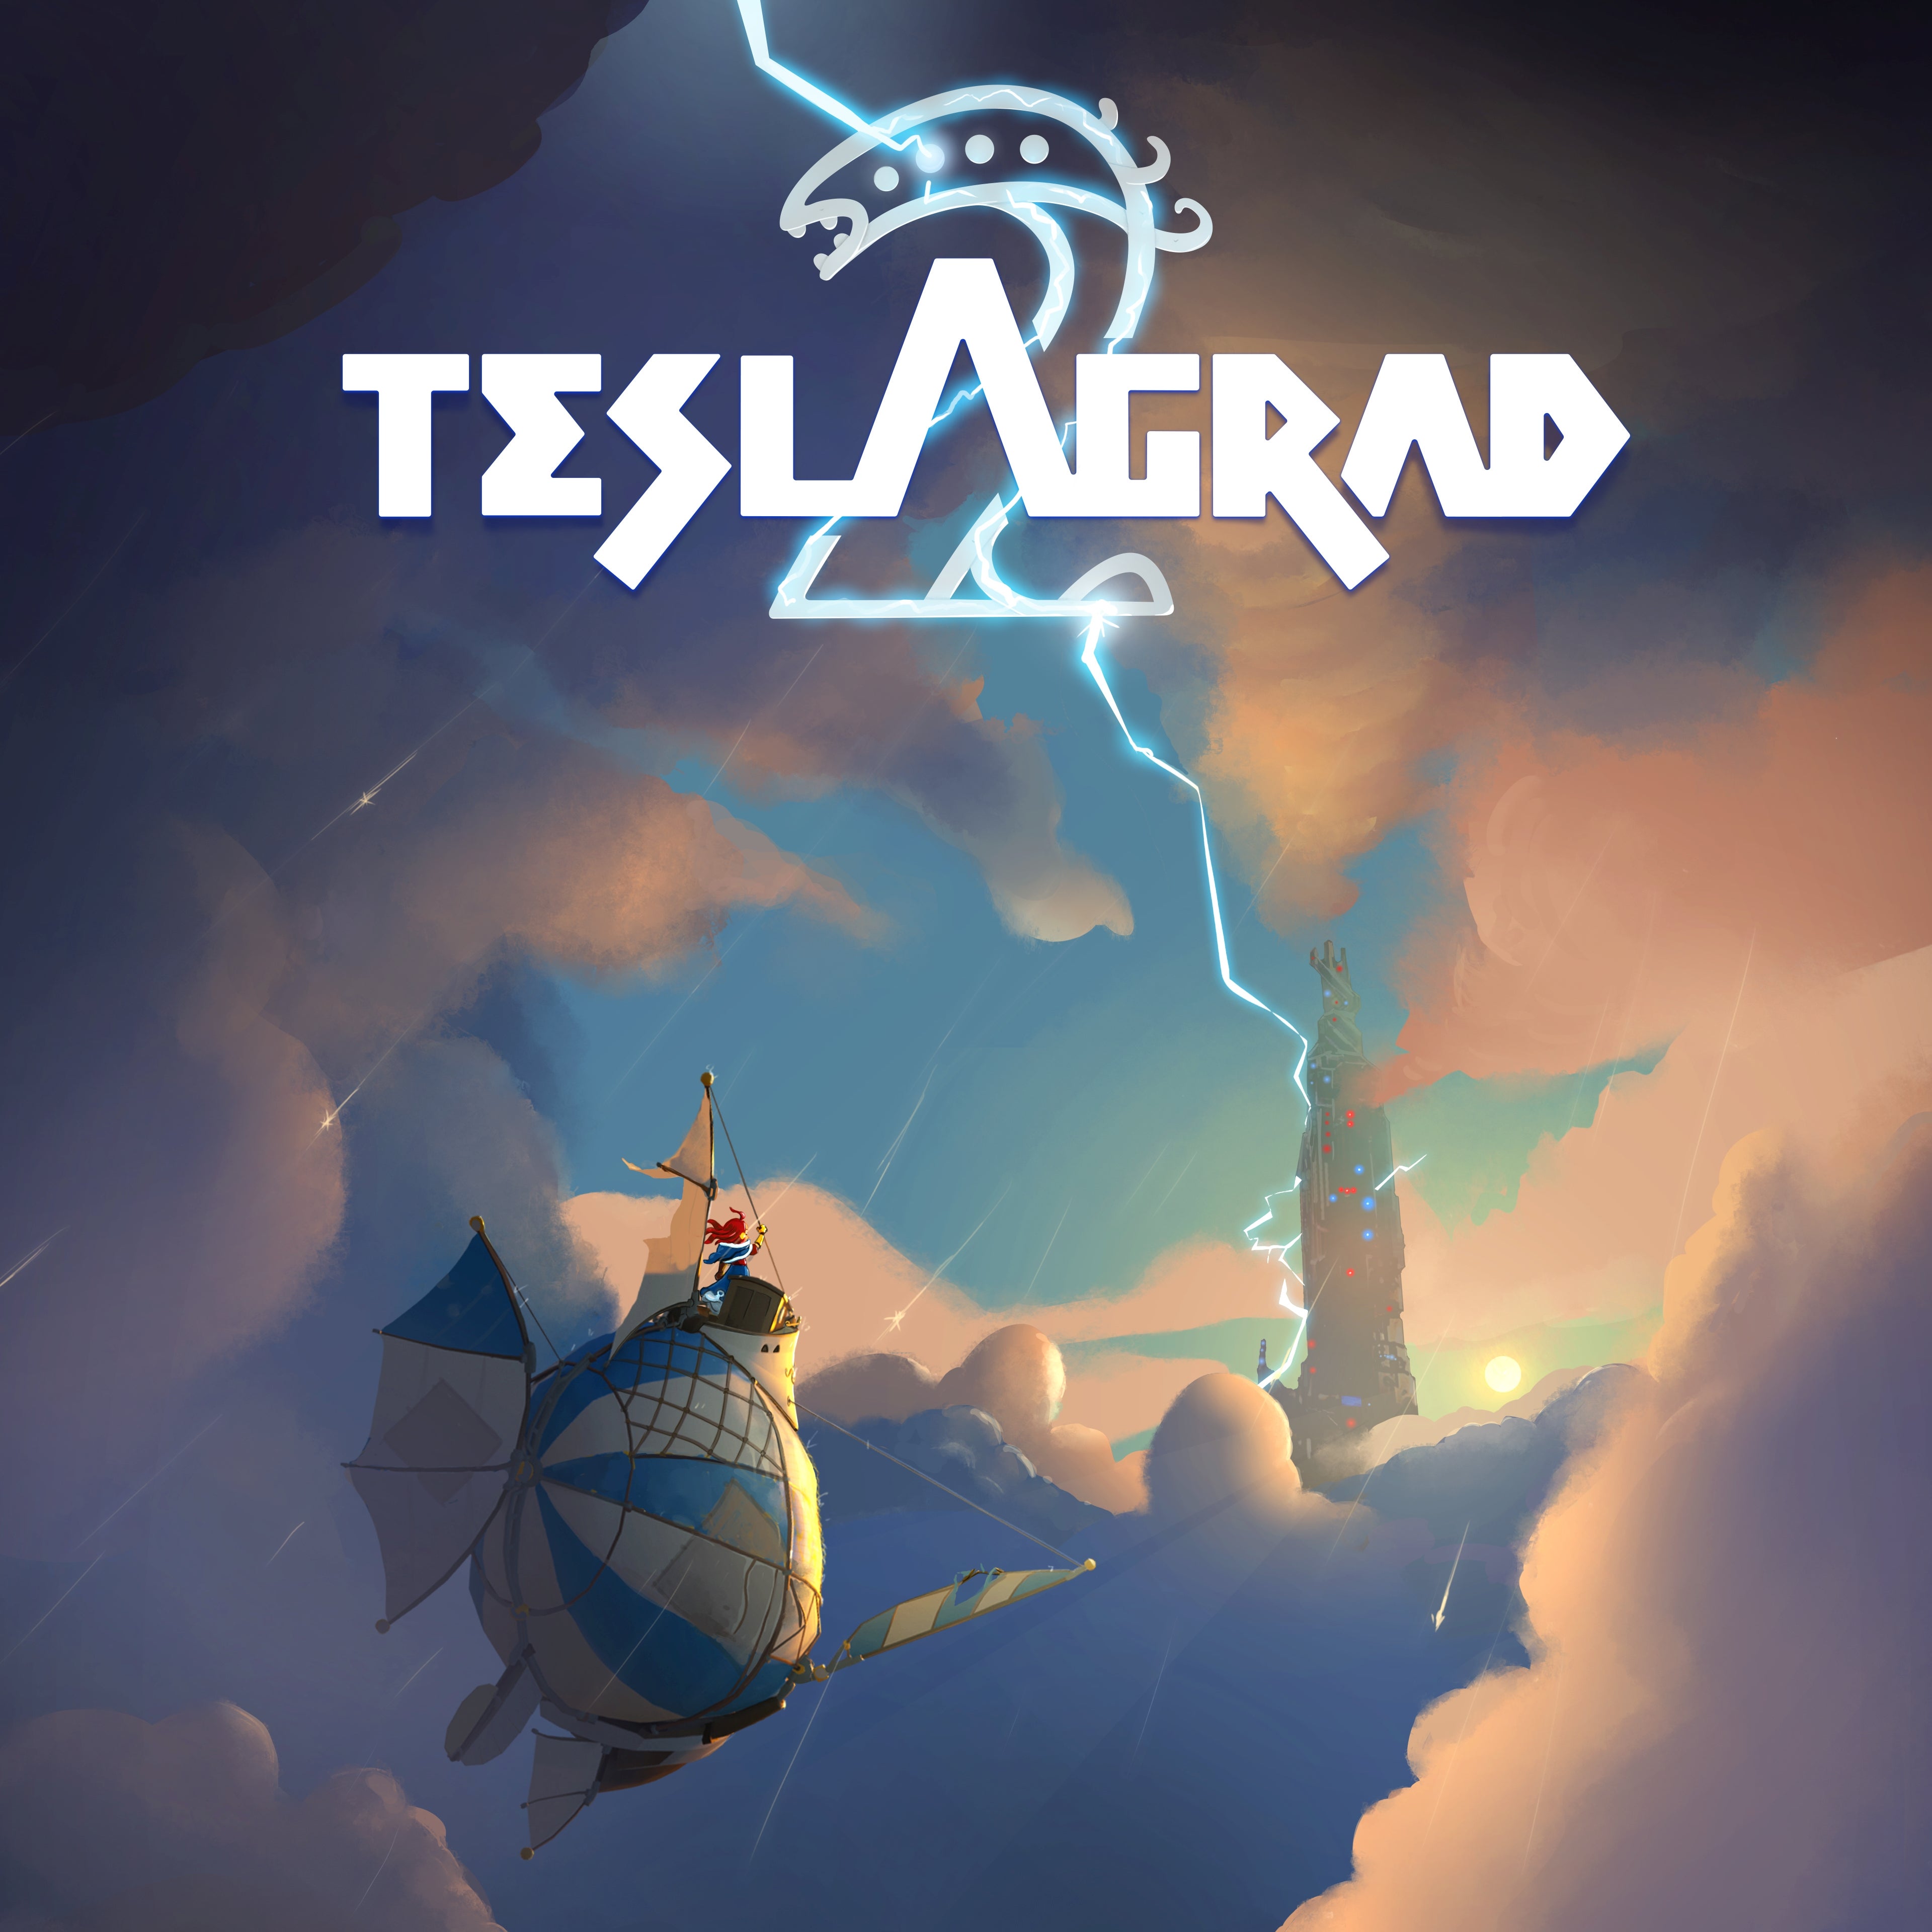 jaquette du jeu vidéo Teslagrad 2